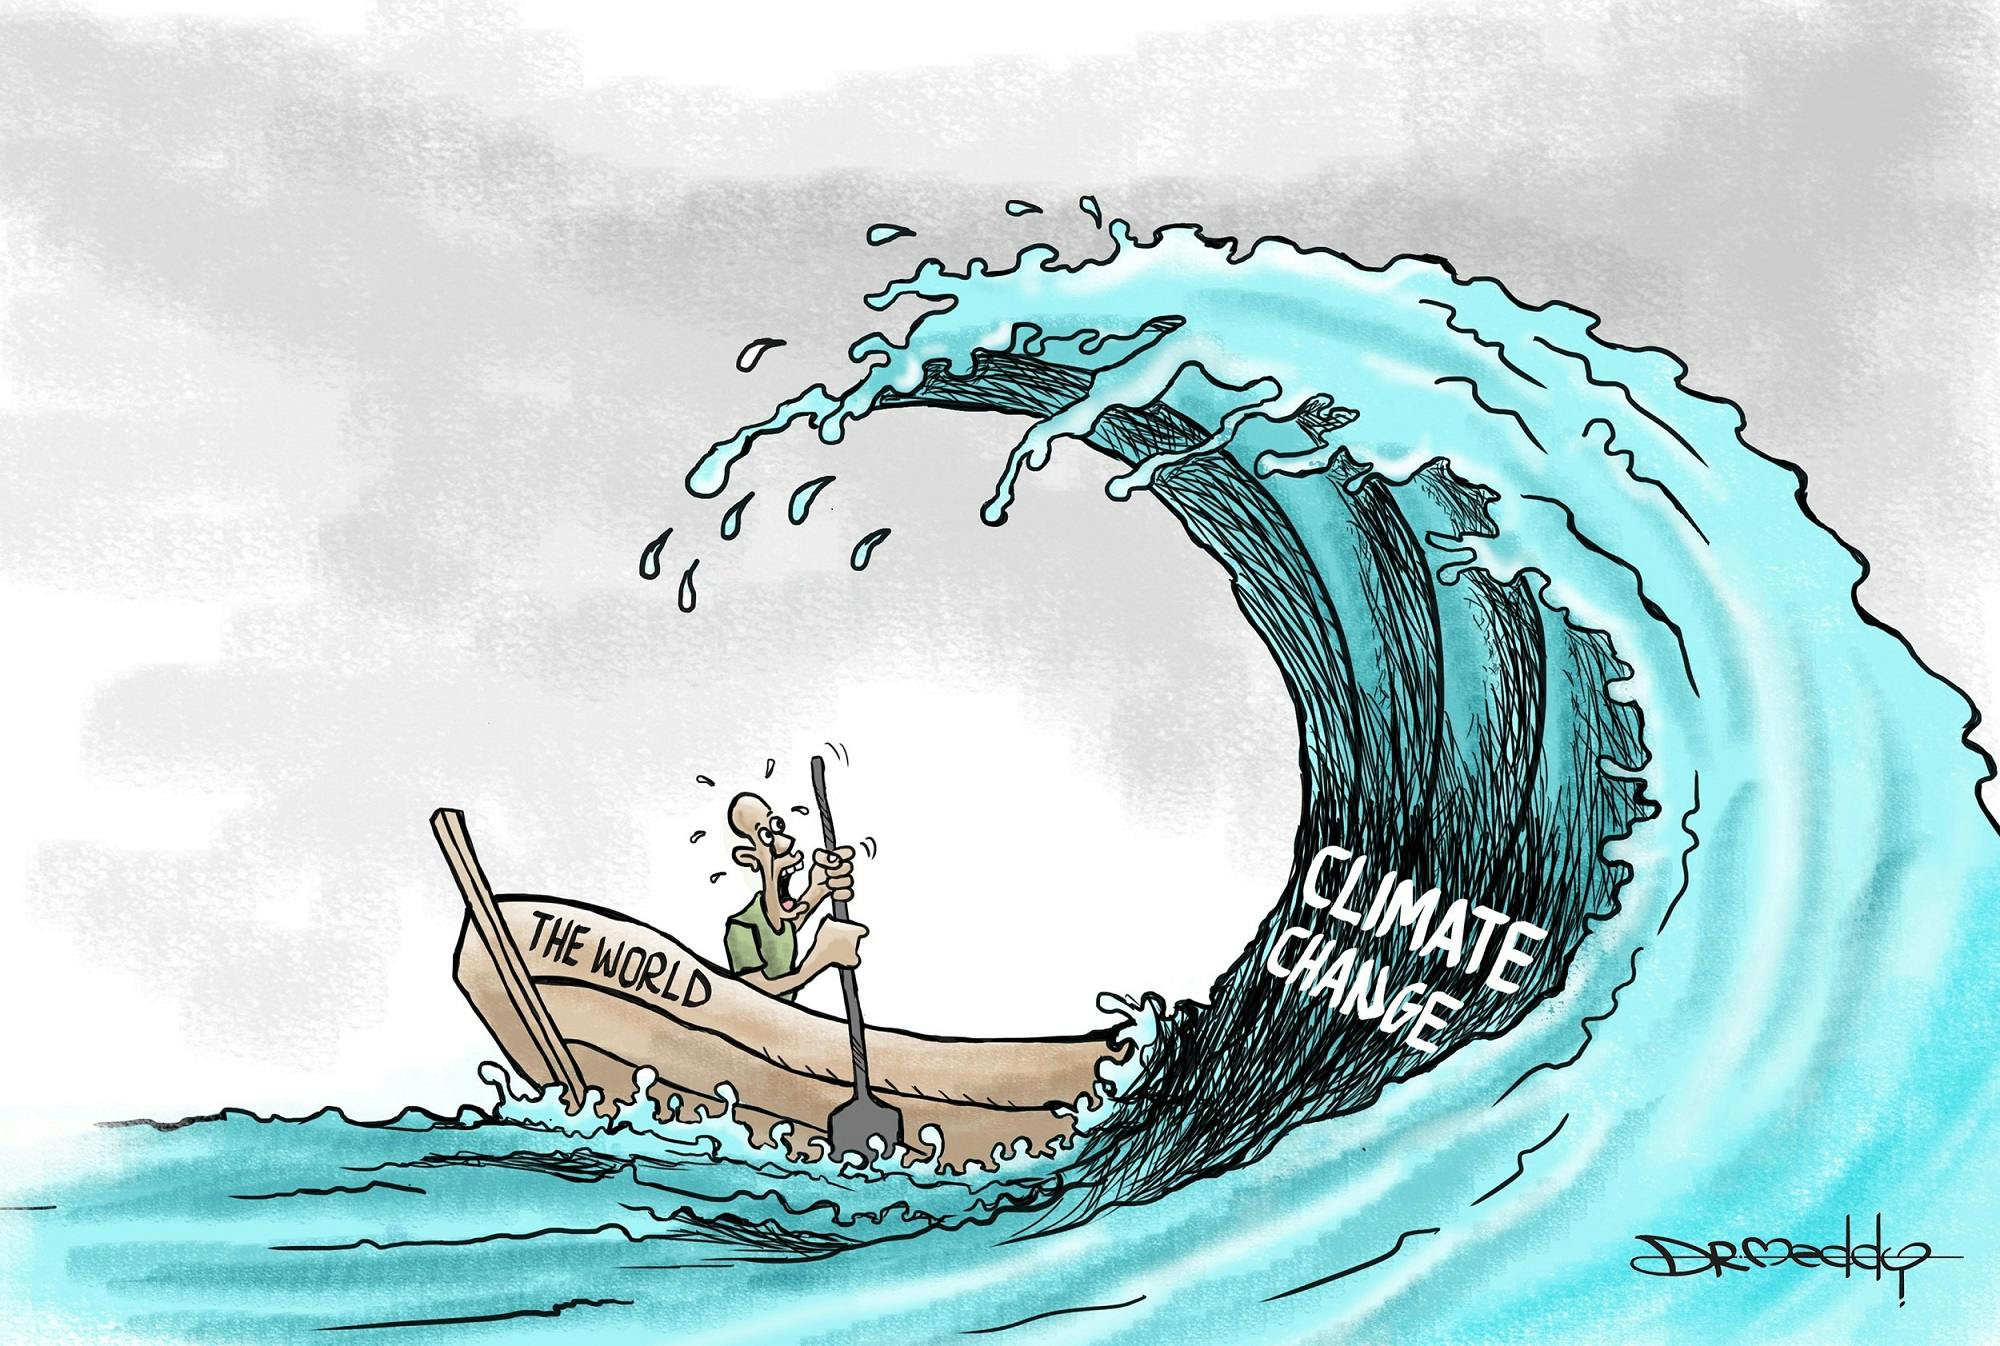 تغییرات اقلیمی، کارتونی از مدی، کارتونیست تانزانیایی ــ منبع: کارتون موومنت